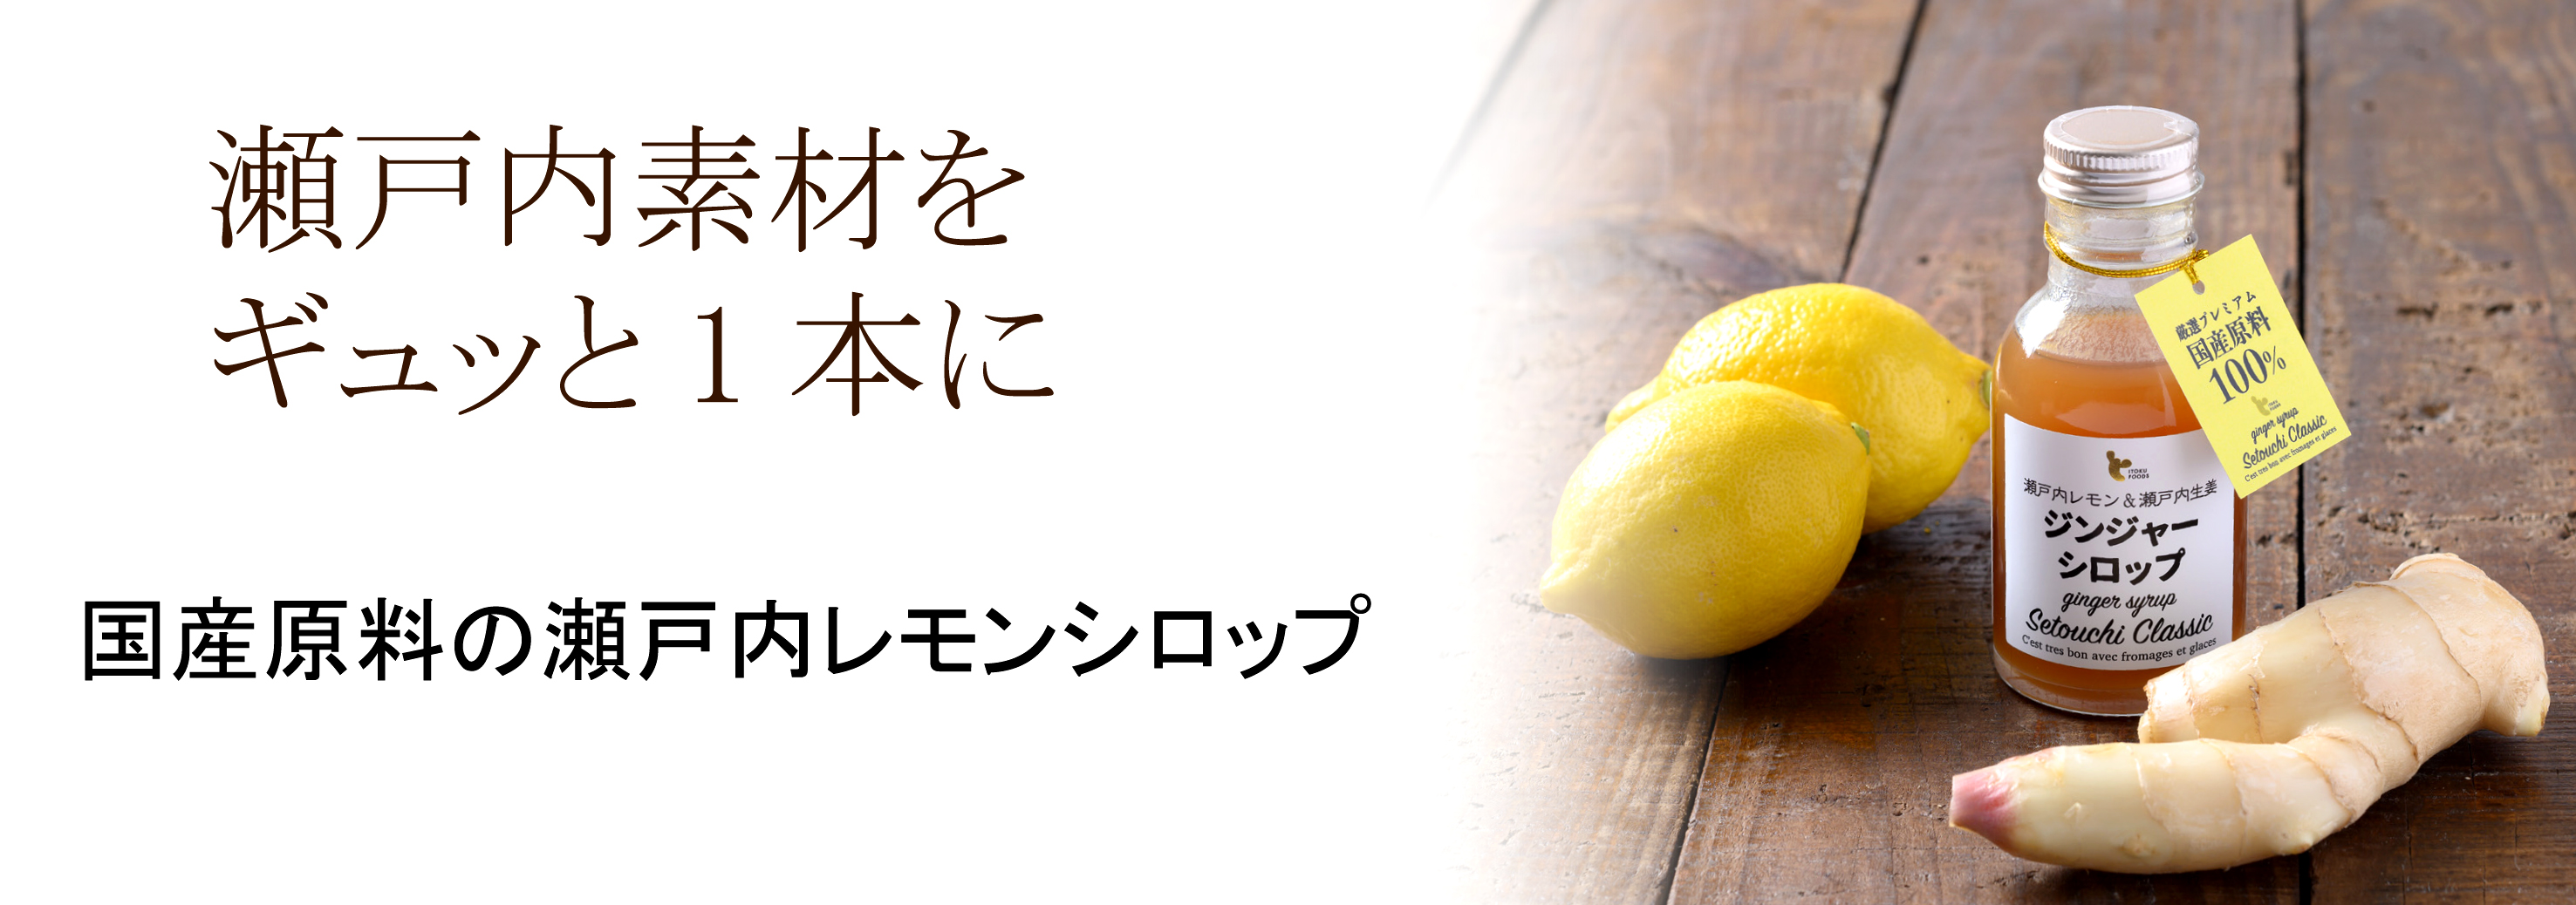 瀬戸内レモンジンジャーシロップ イトク食品公式 イトクのしょうが屋さん